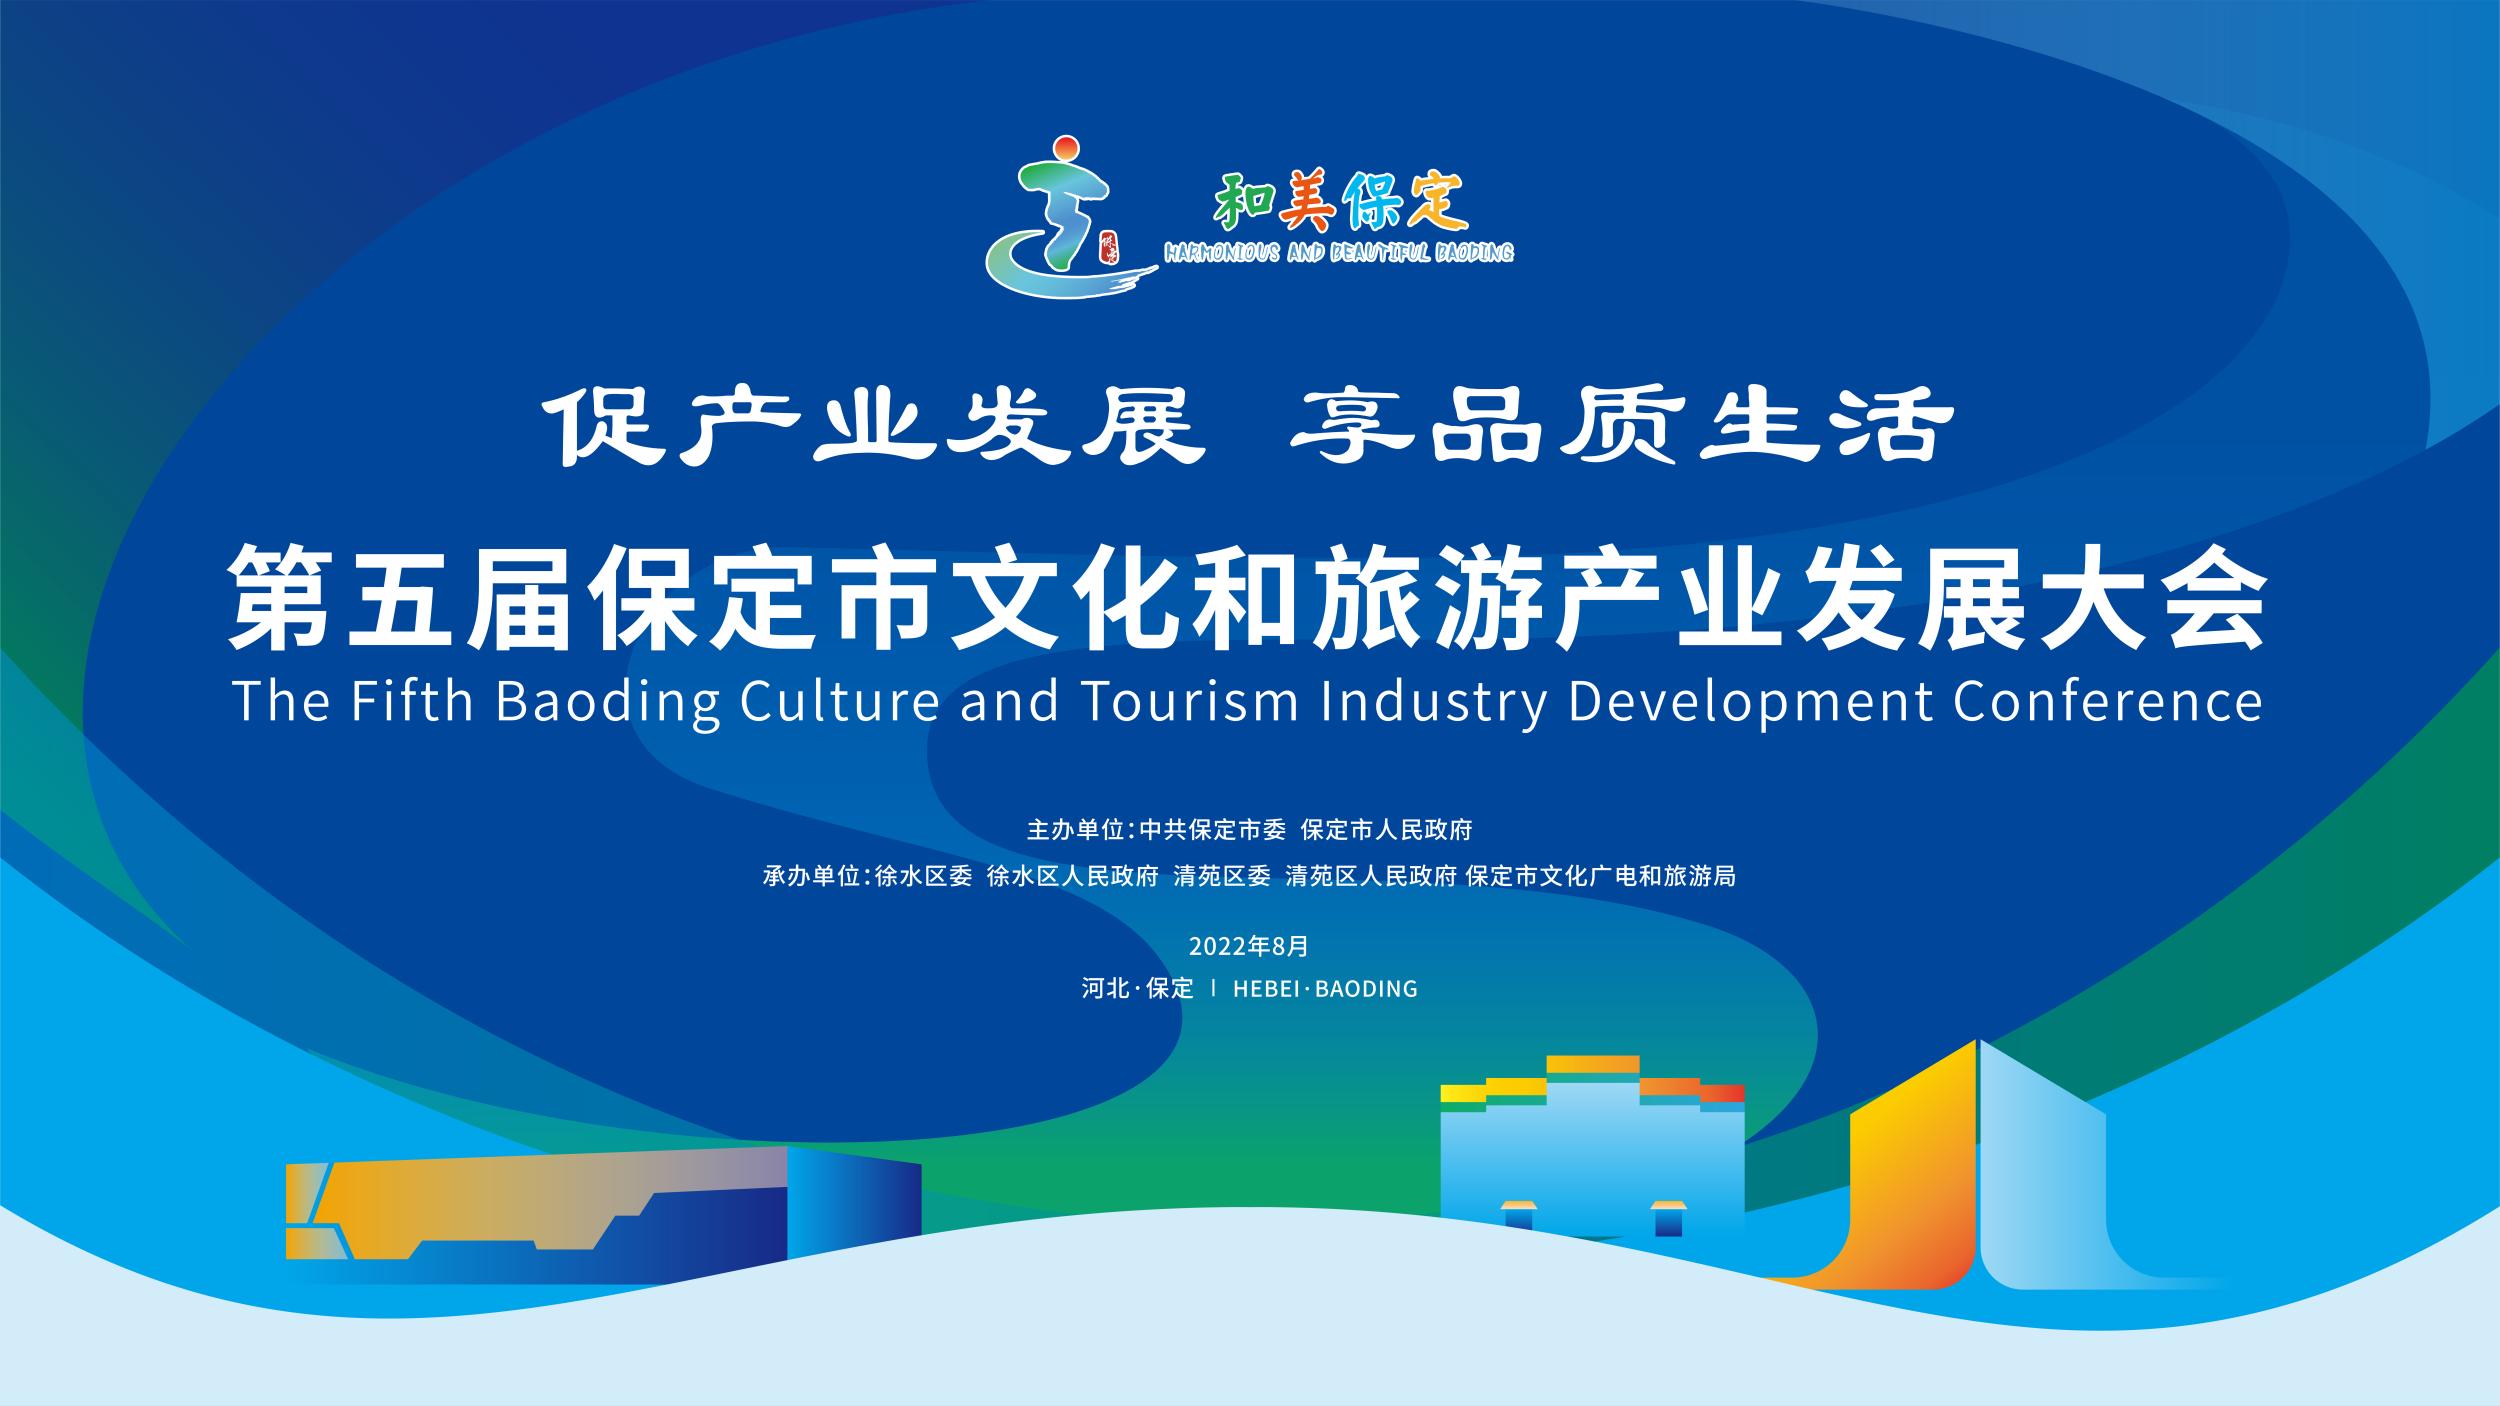 長城直播|第五屆保定市文化和旅游產業發展大會